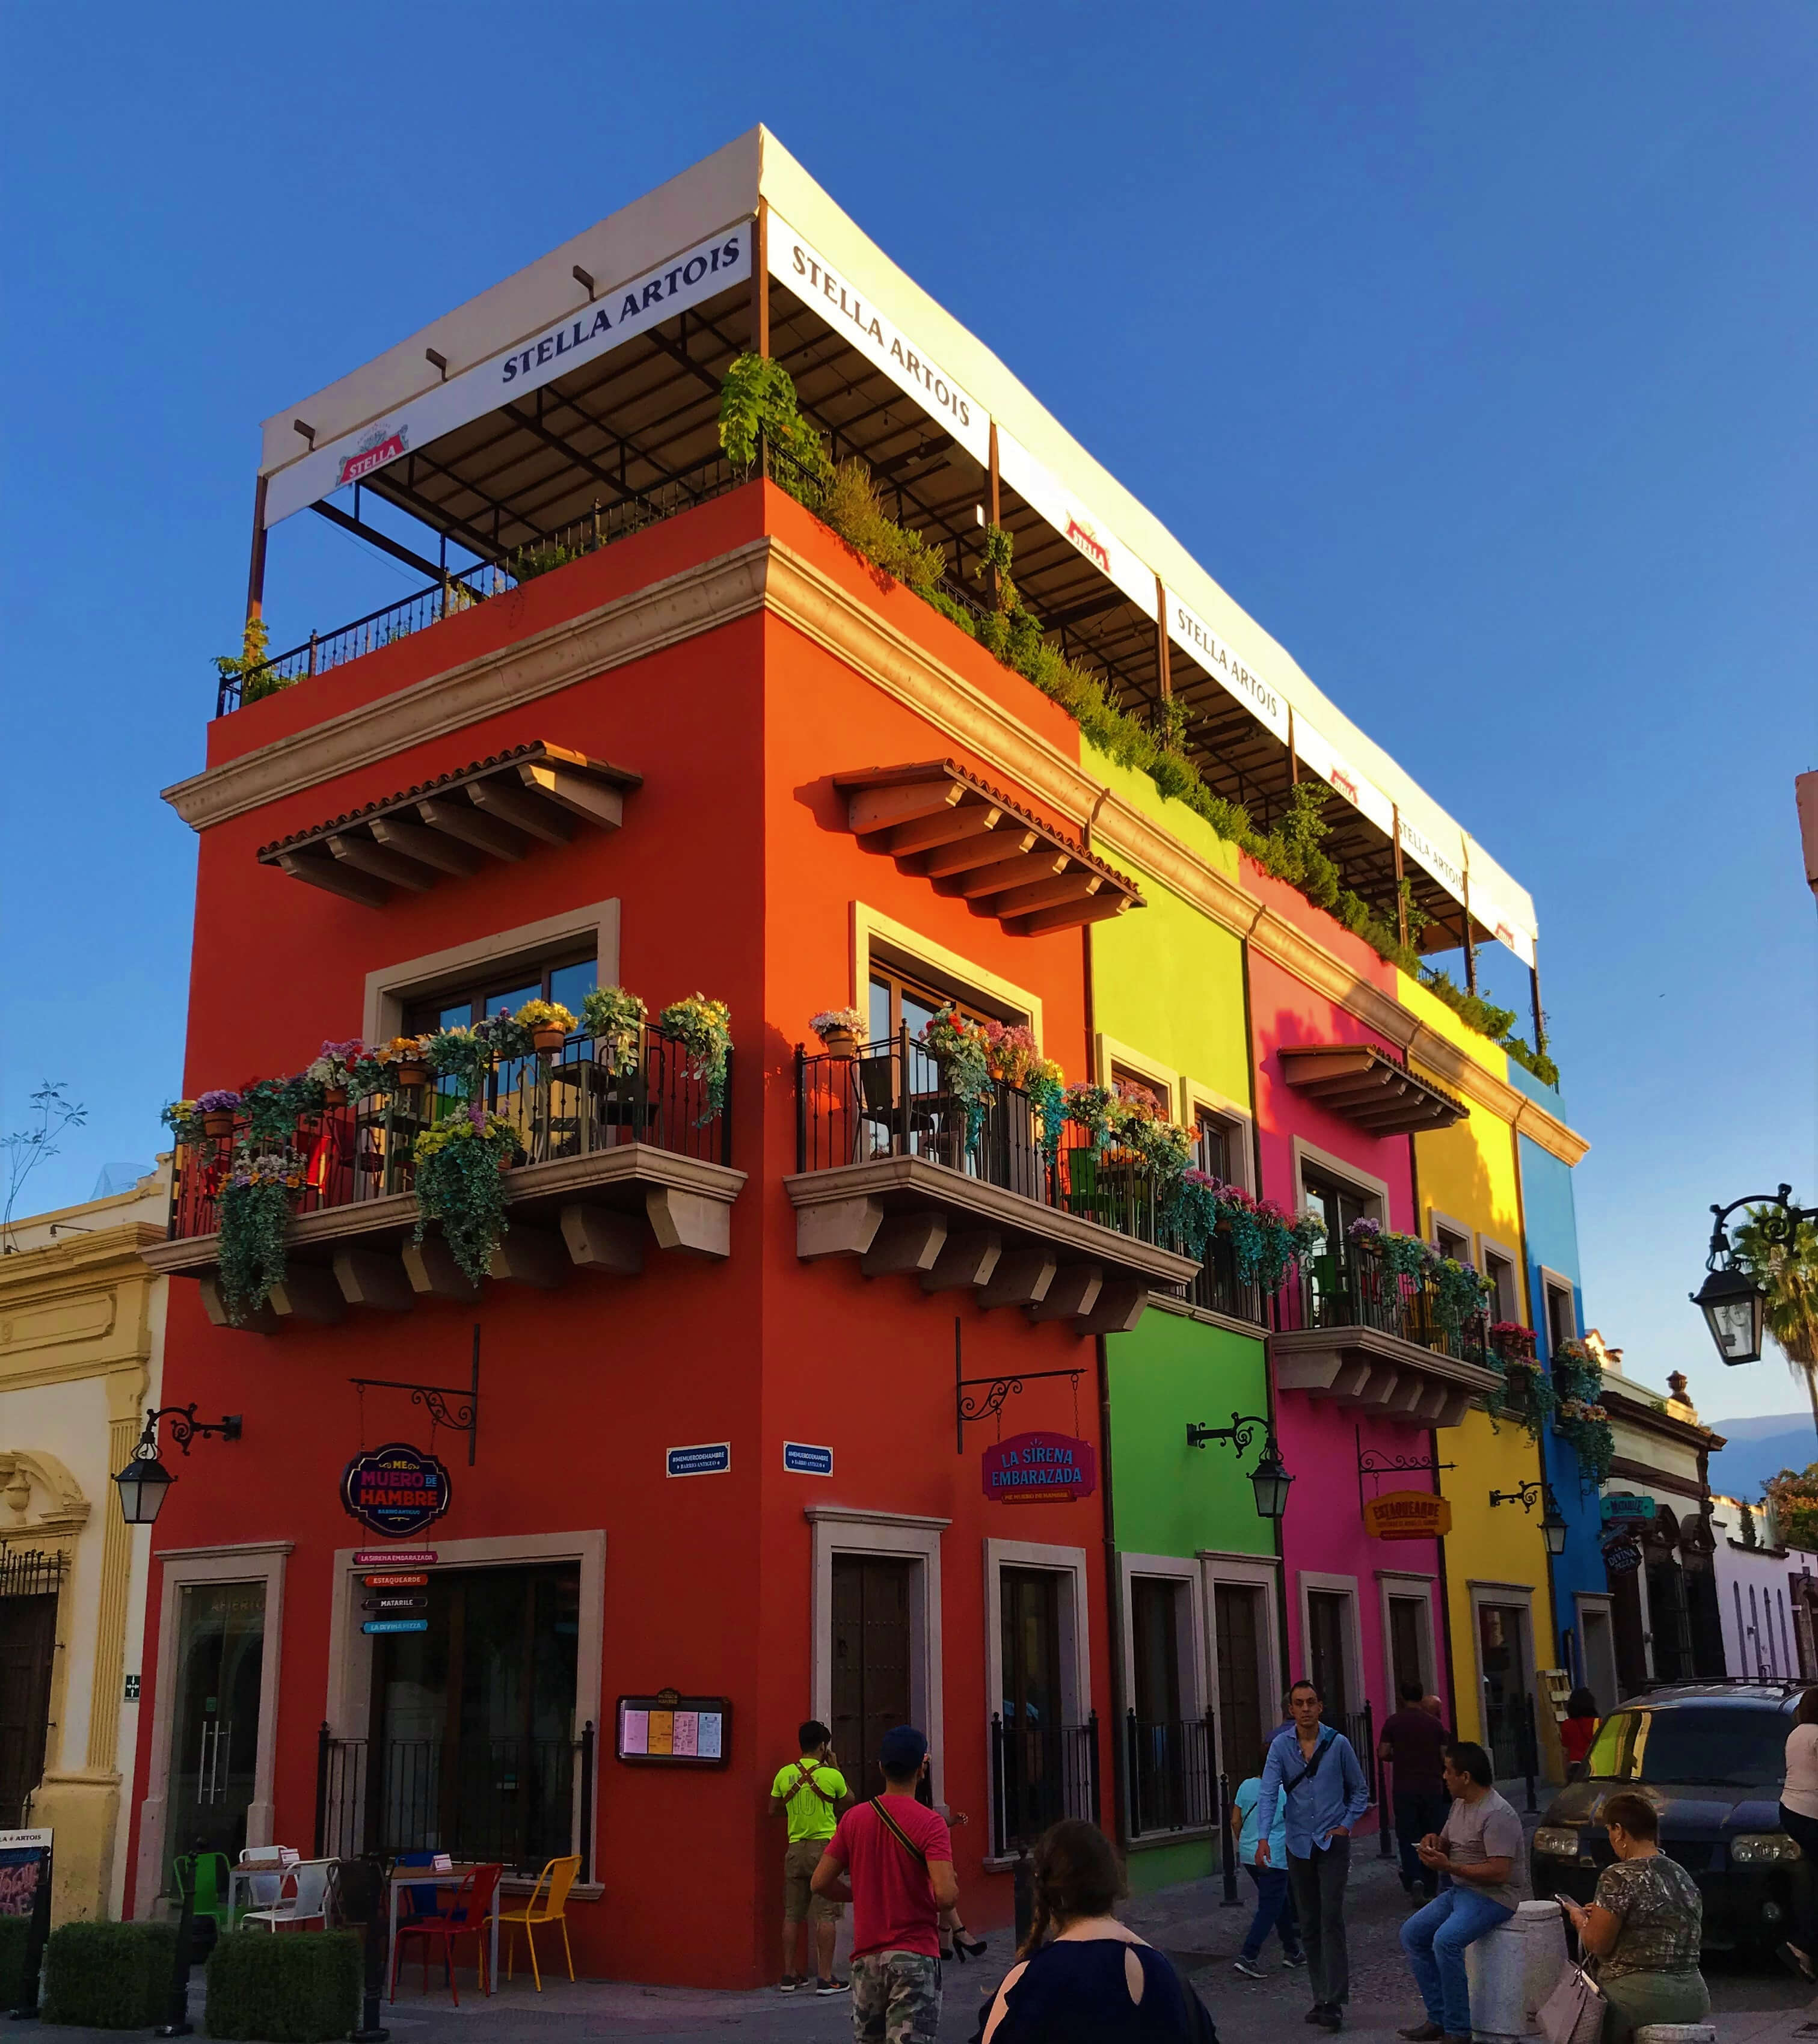 Imagen de una esquna del Barrio Antiguo en Monterrey Nuevo León.